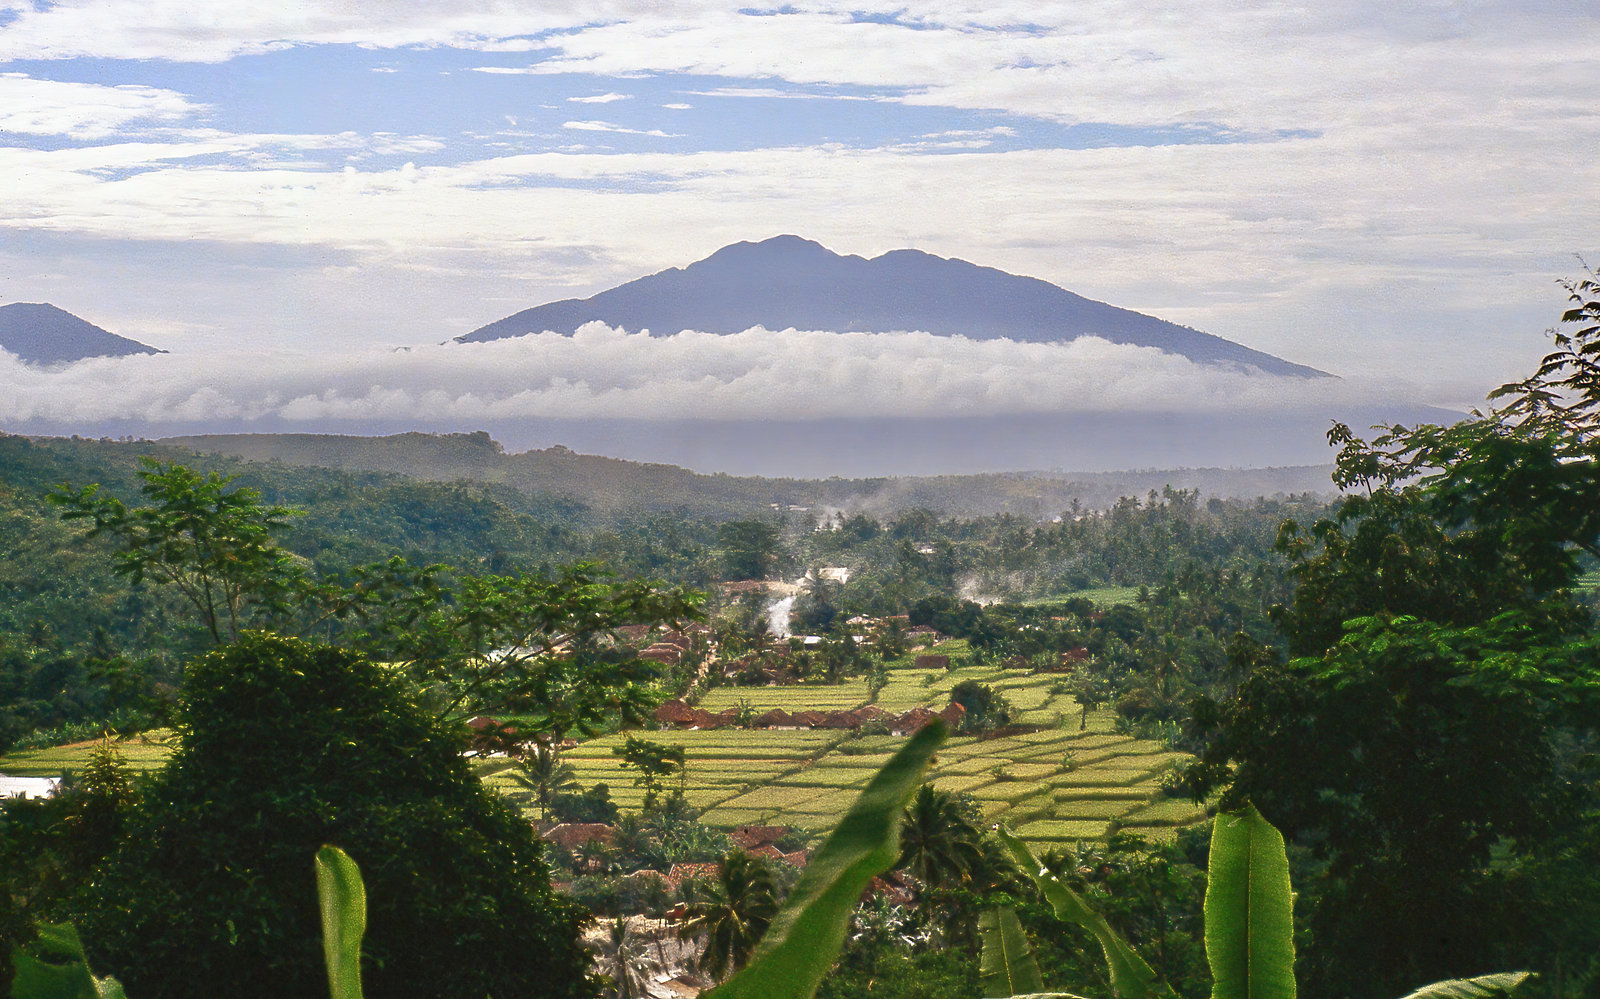 Puncak West Java Indonesia June 1981